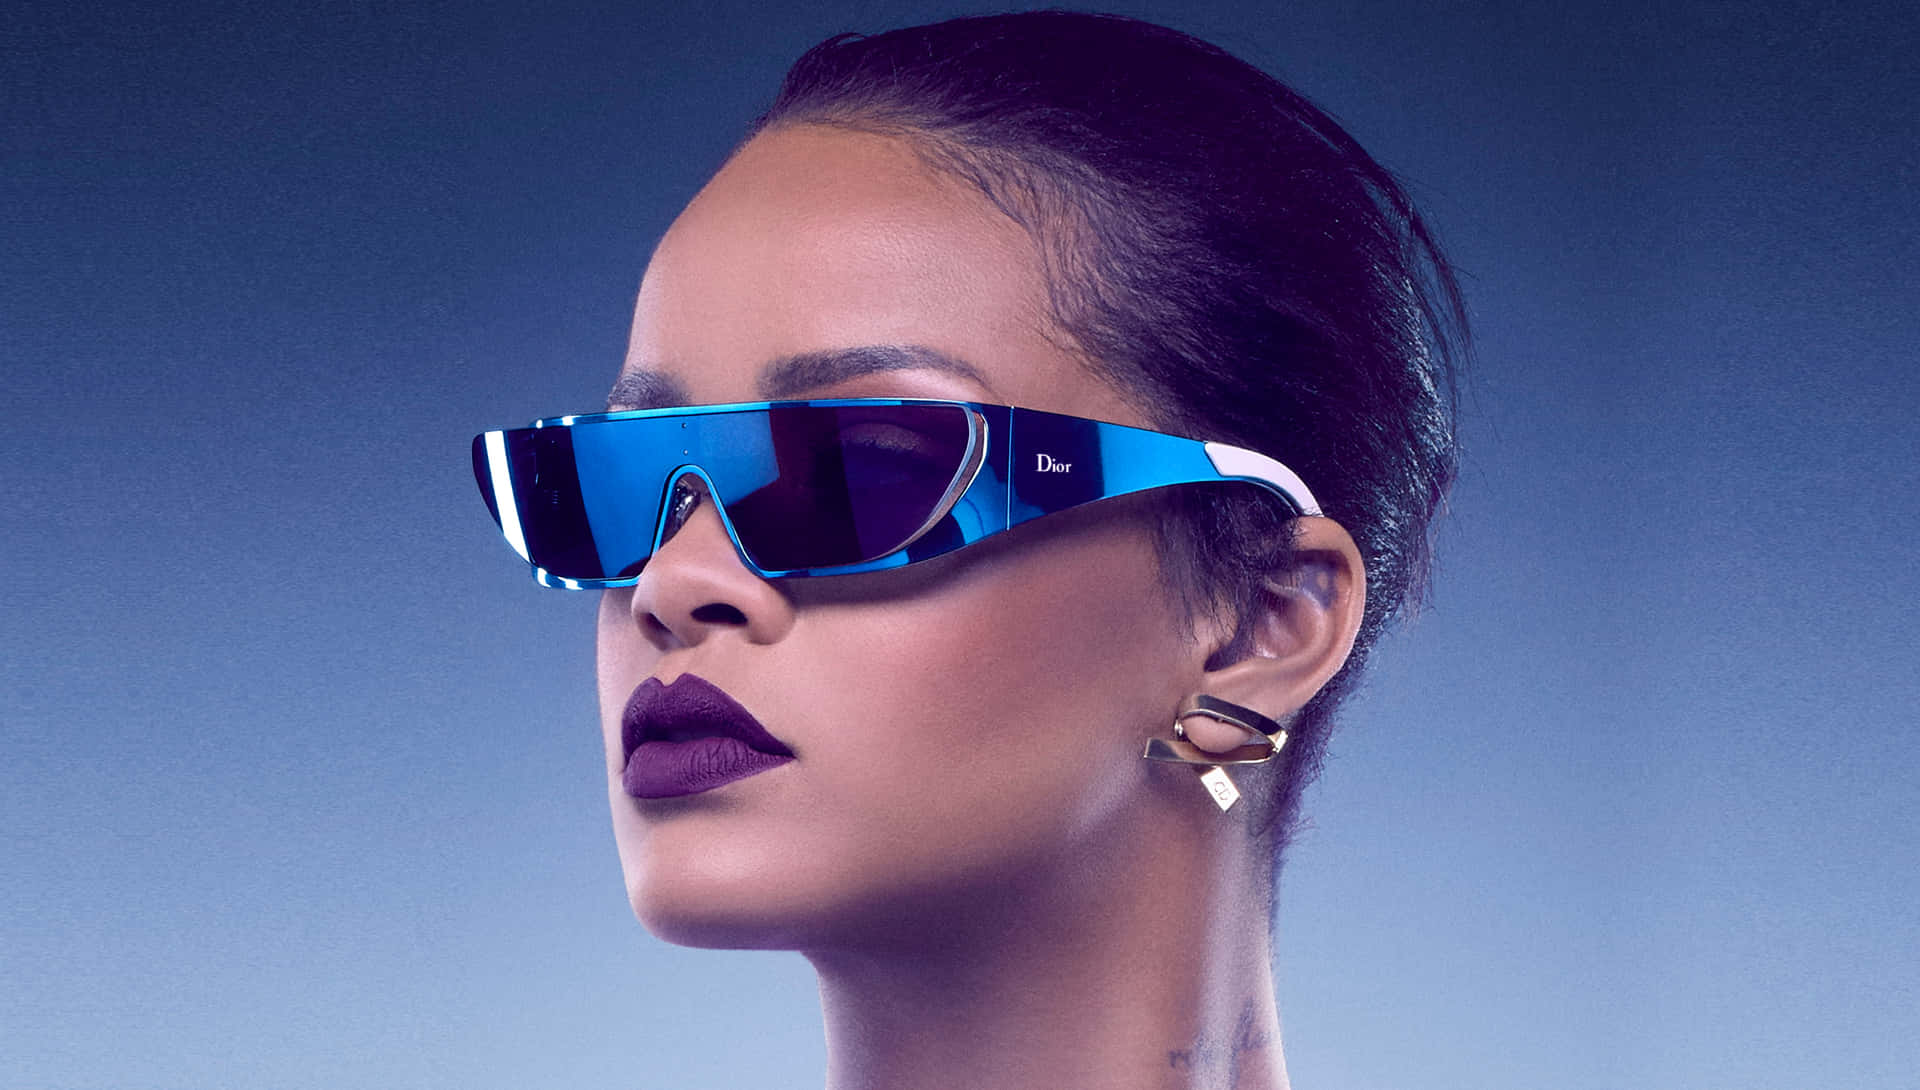 Rihannache Possiede Il Suo Stile E Il Suo Charme Moda